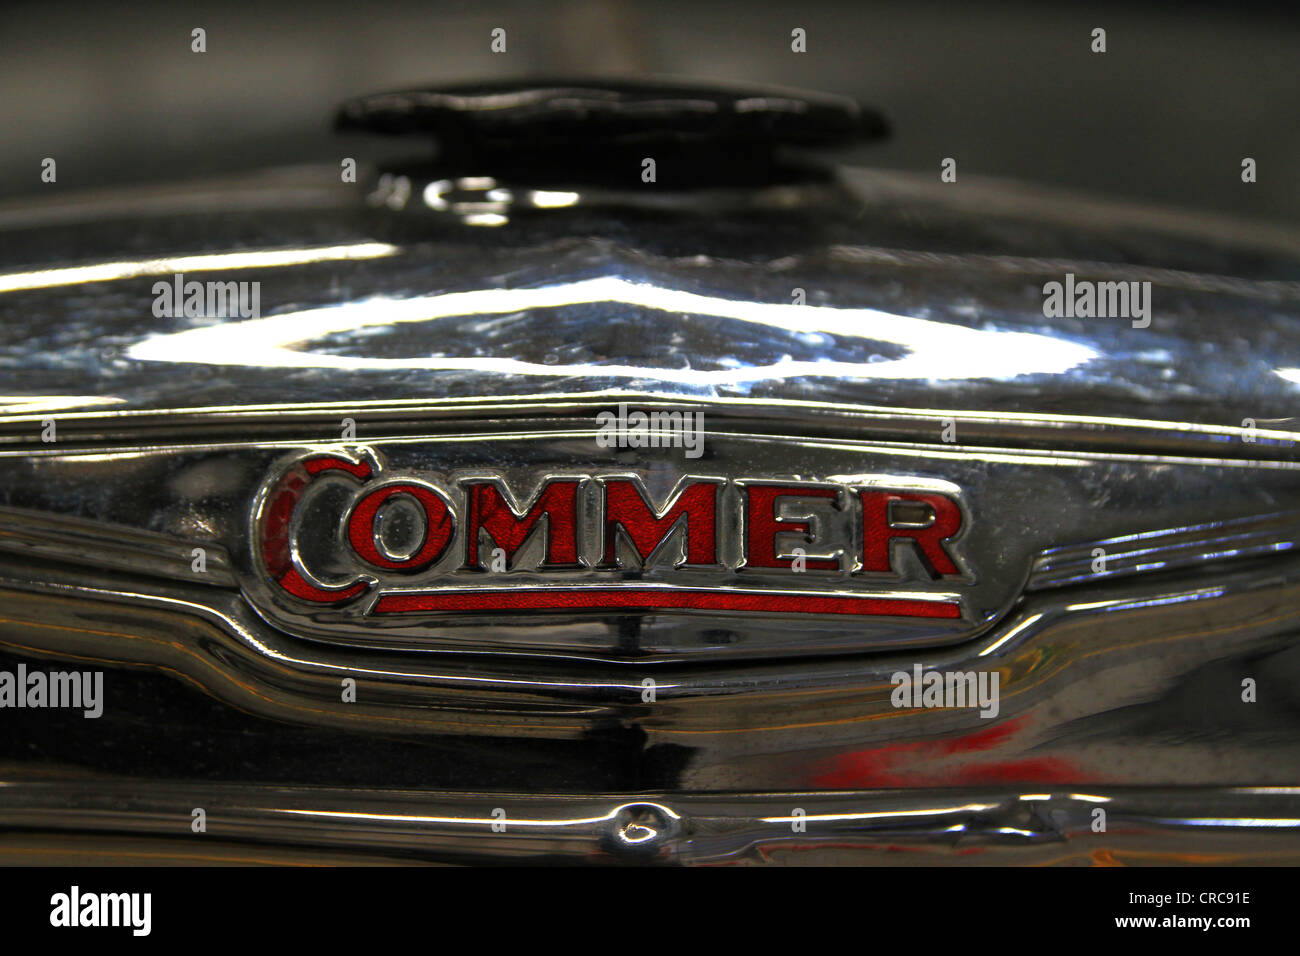 Chrome la griglia del radiatore di un camion Commer, cappuccio nero lettere rosse. Foto Stock